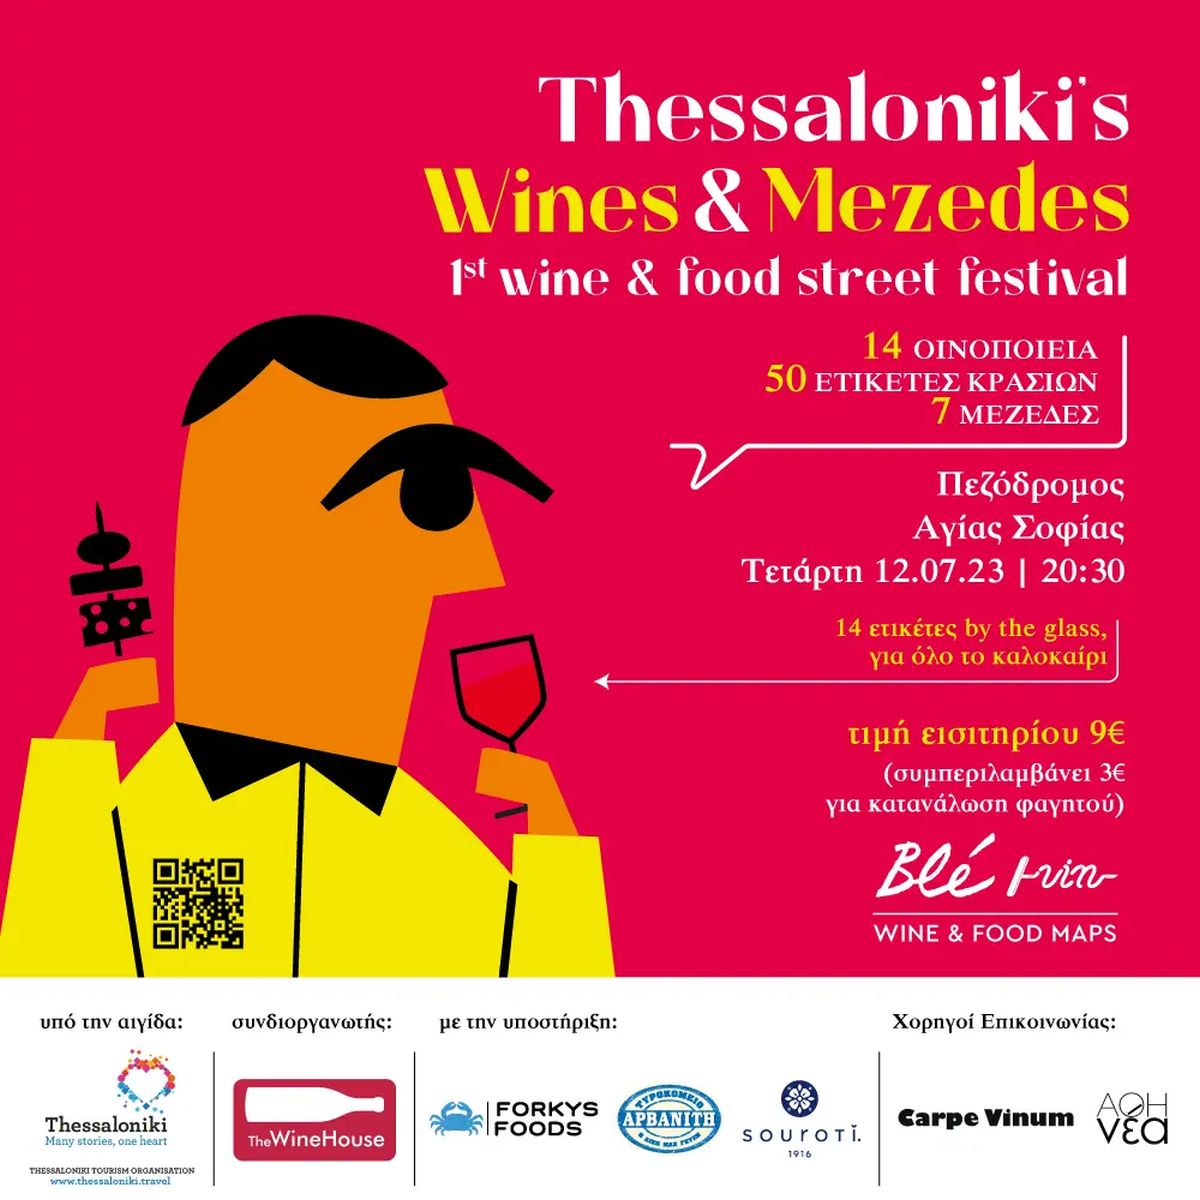 Blé Vin / Food & Wine Maps presents Thessaloniki’s Wines & Mezedes